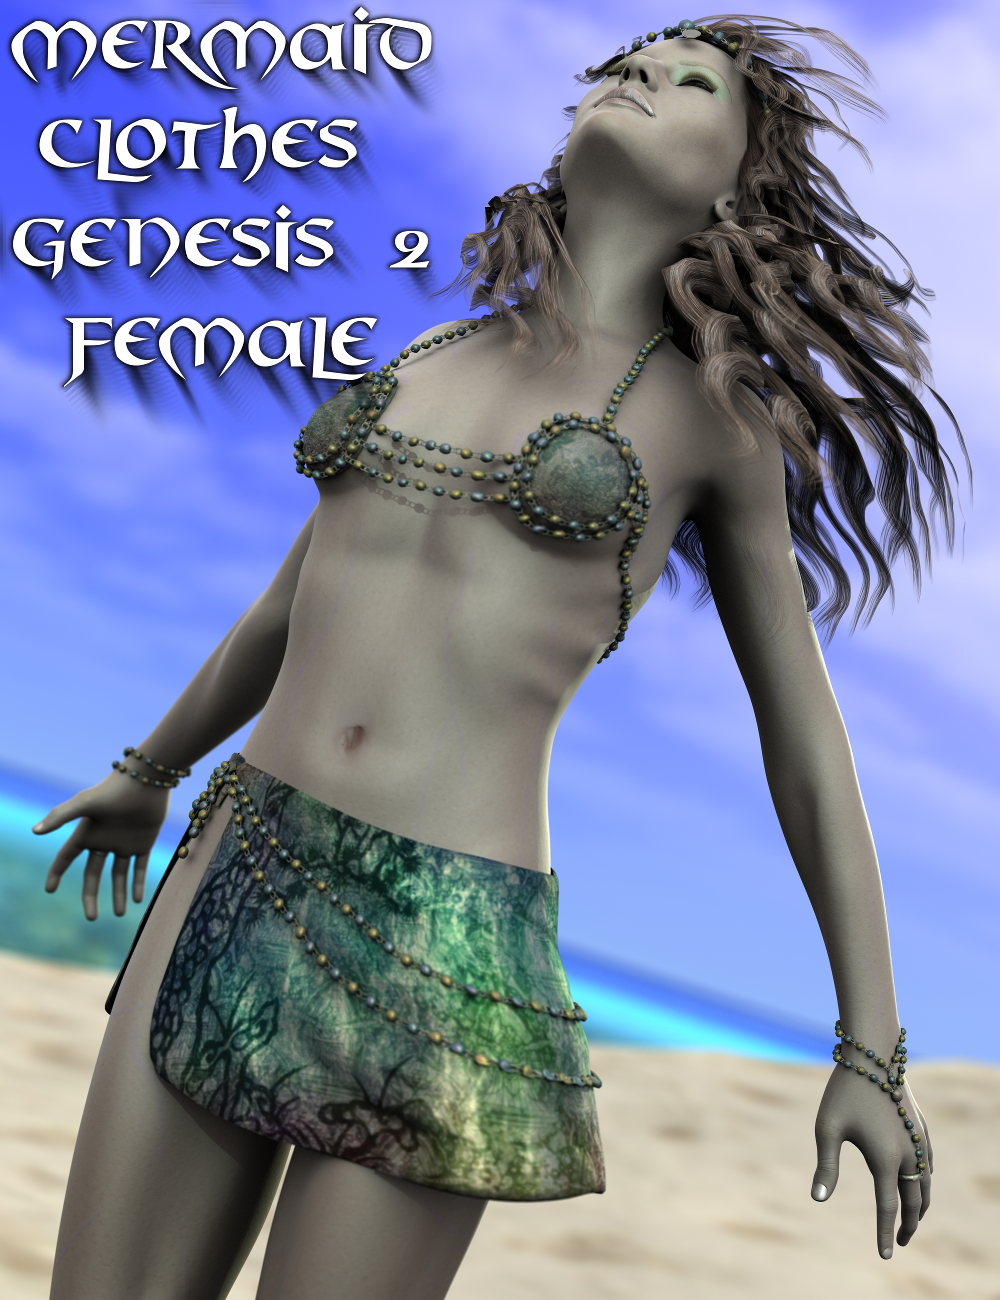 Mermaid Clothes Genesis 2 Female(s) by: SickleyieldFuseling, 3D Models by Daz 3D